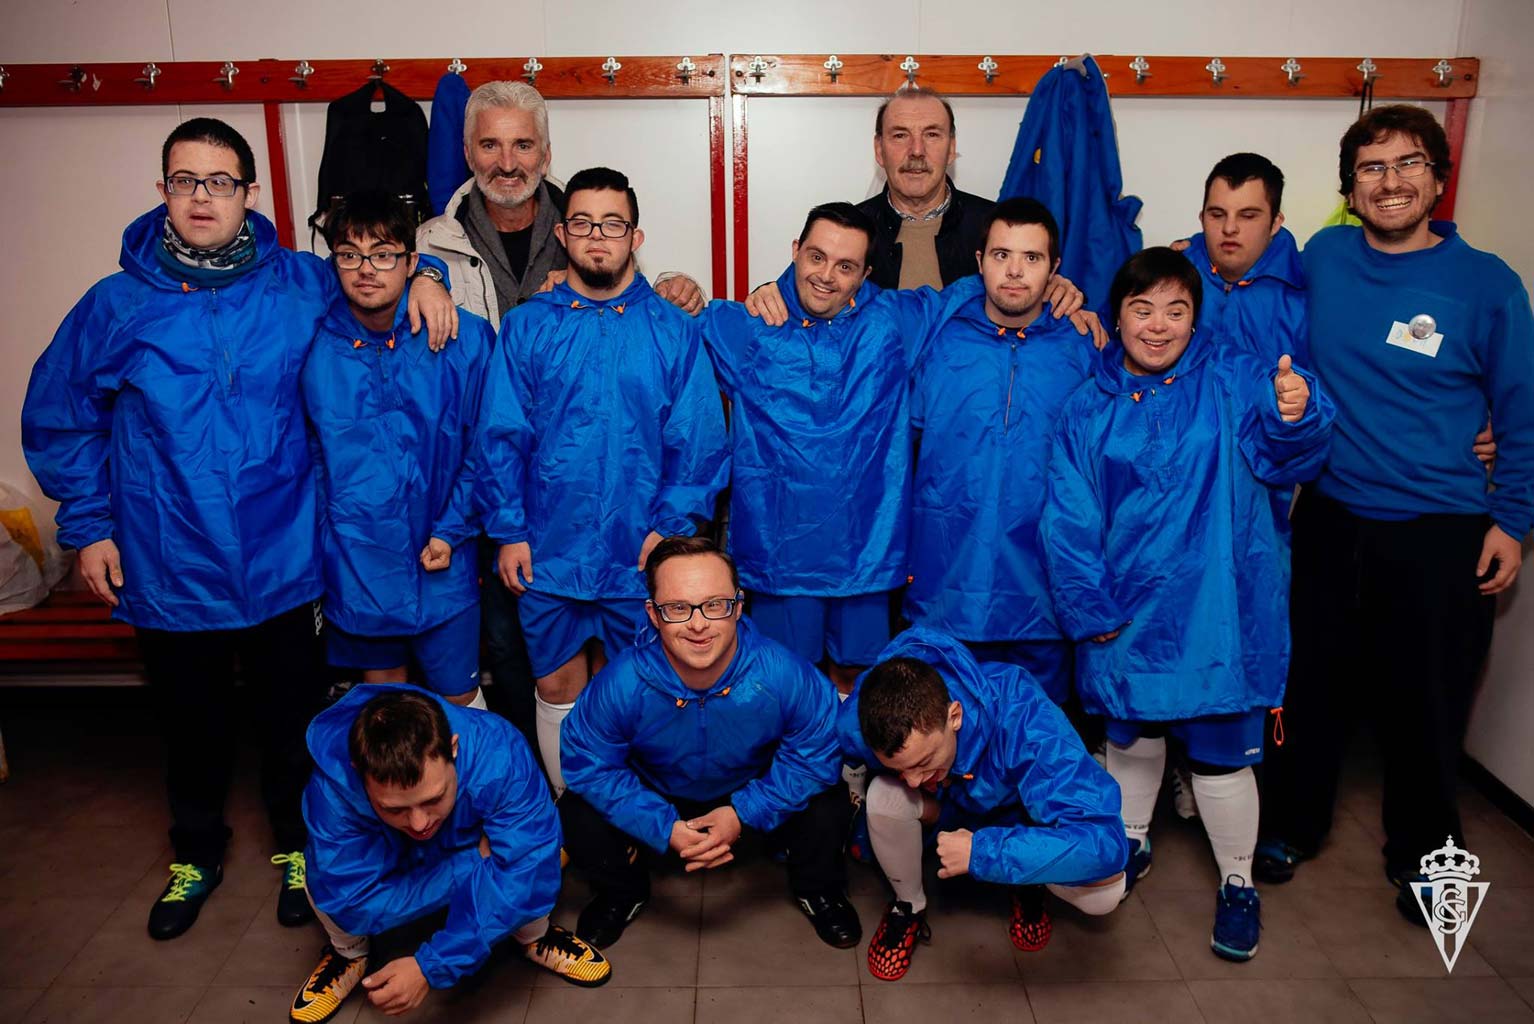 Cundi y Redondo visitan el entrenamiento del equipo de Down Asturias Sporting1905